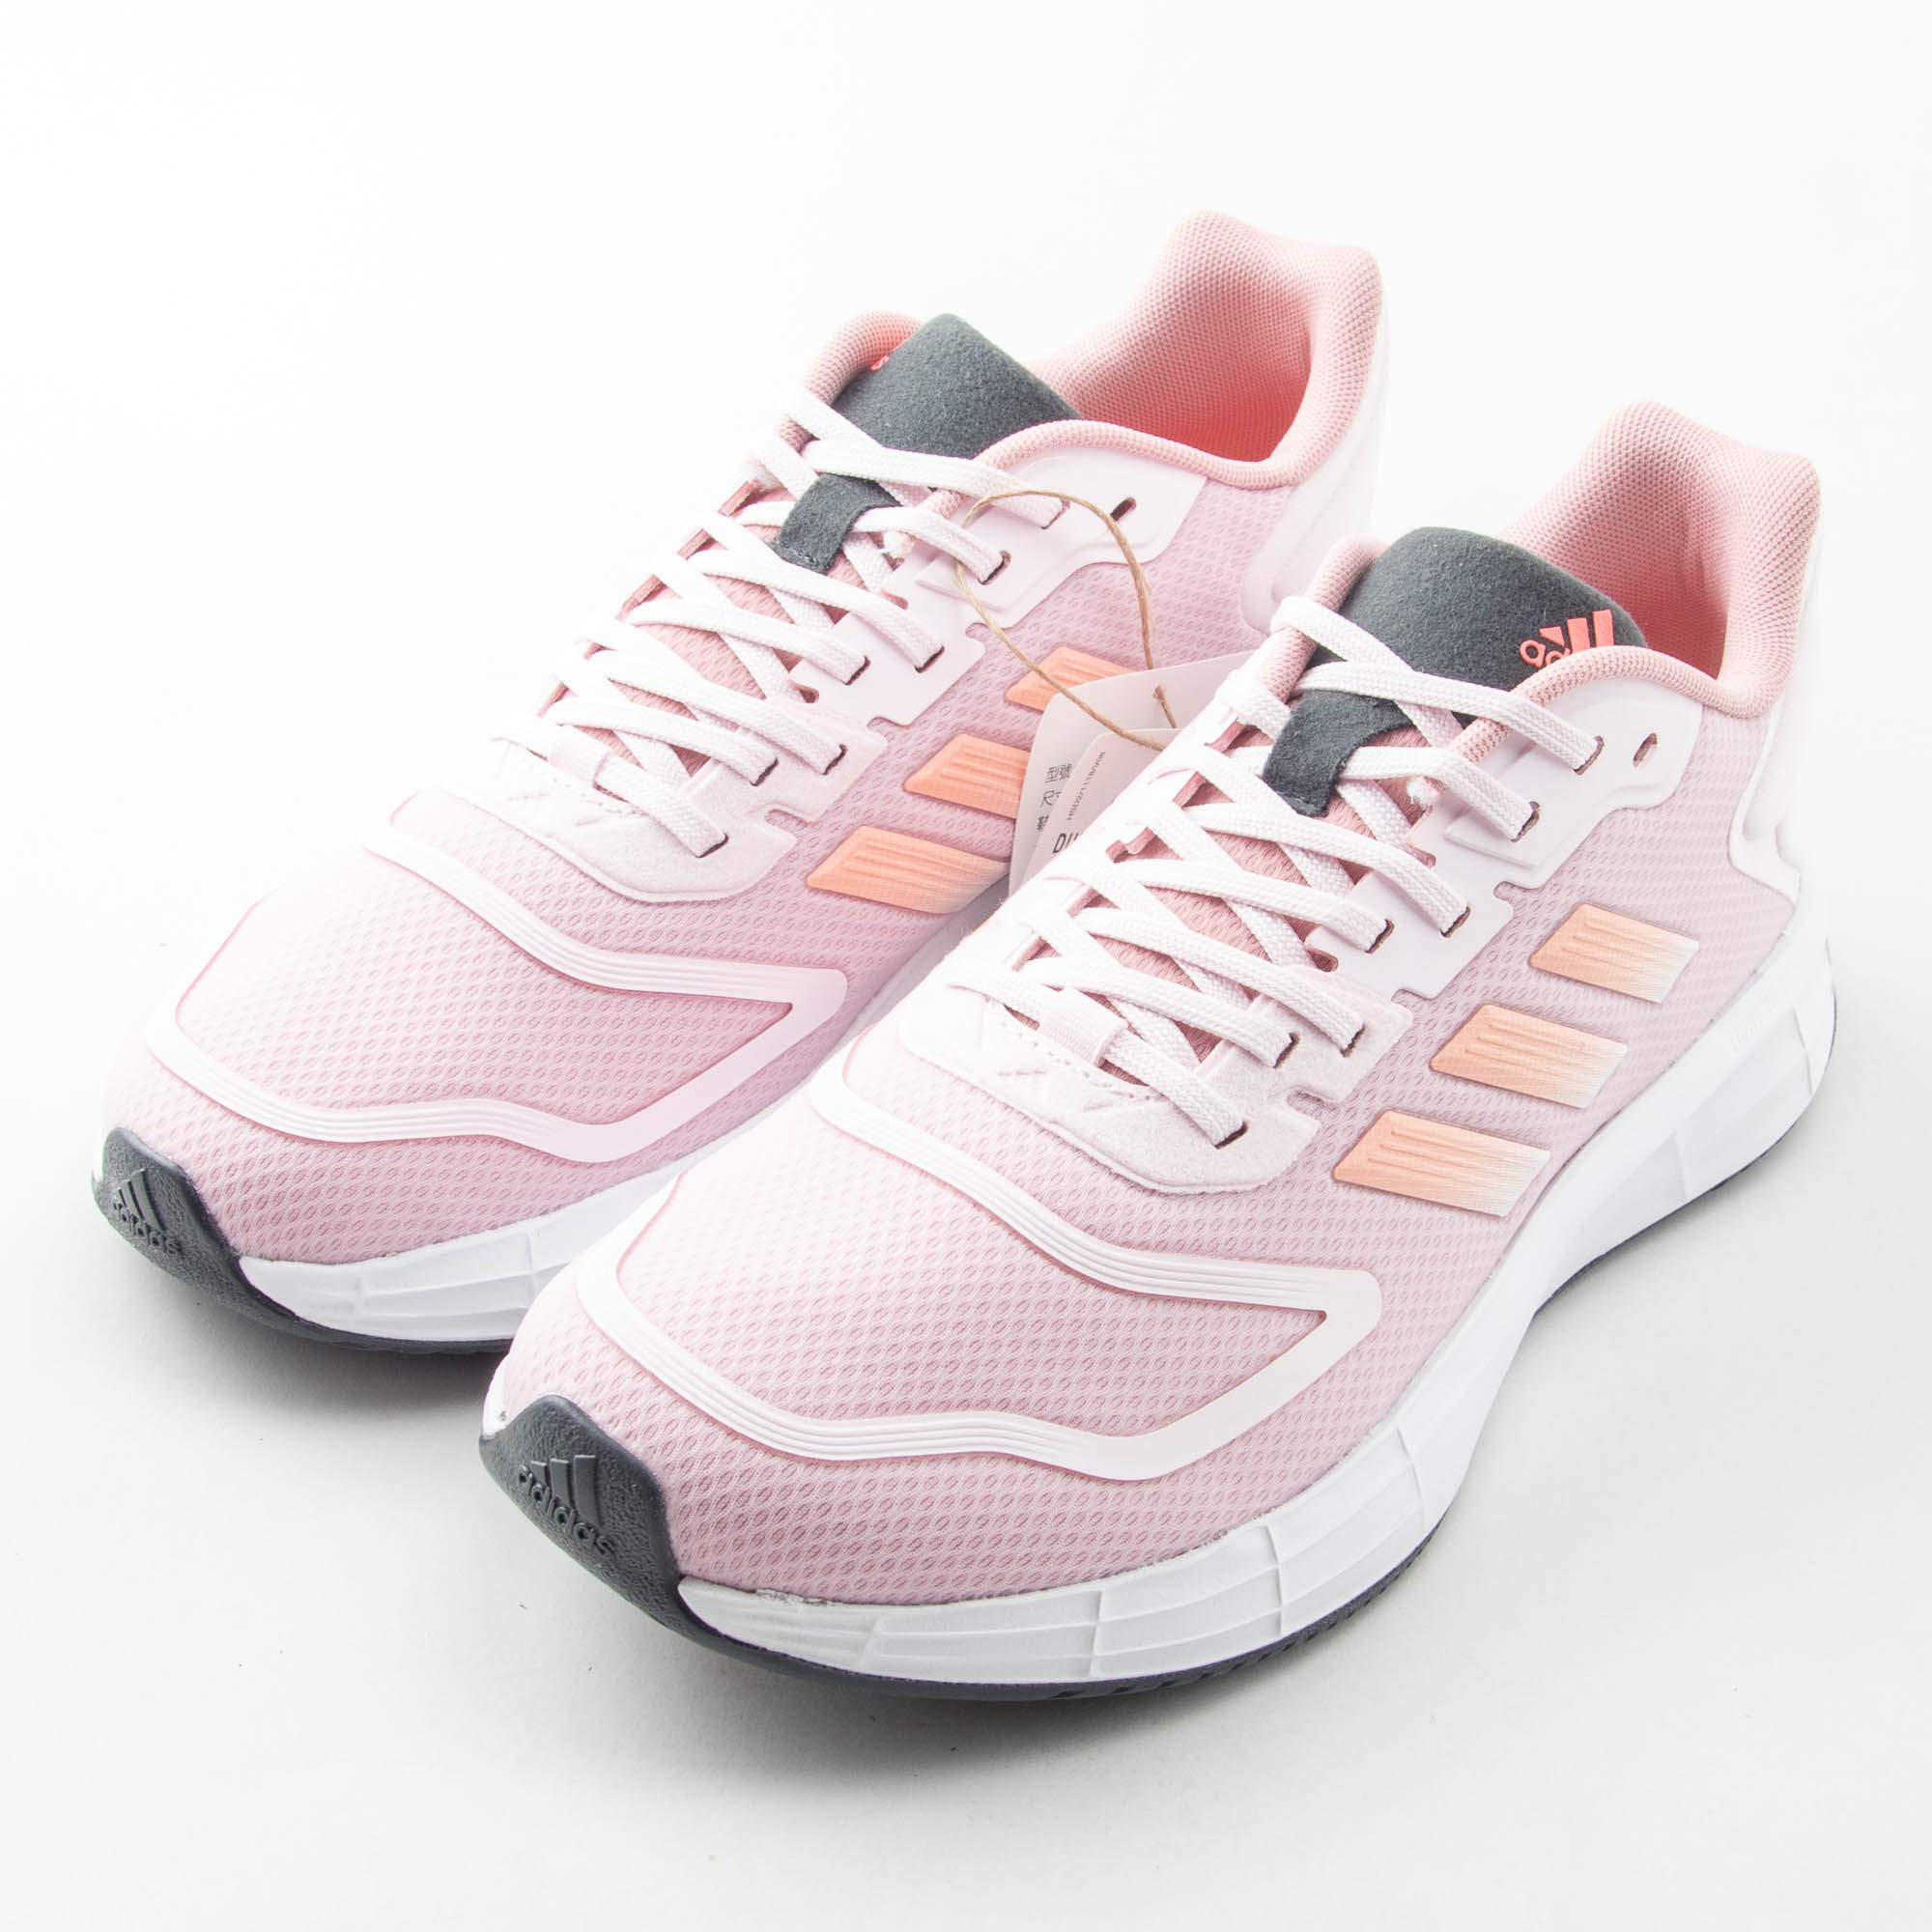 Adidas 愛迪達 Duramo 10 女 慢跑鞋 GX0715 運動 健身 休閒 輕量 透氣 舒適 穿搭 現貨